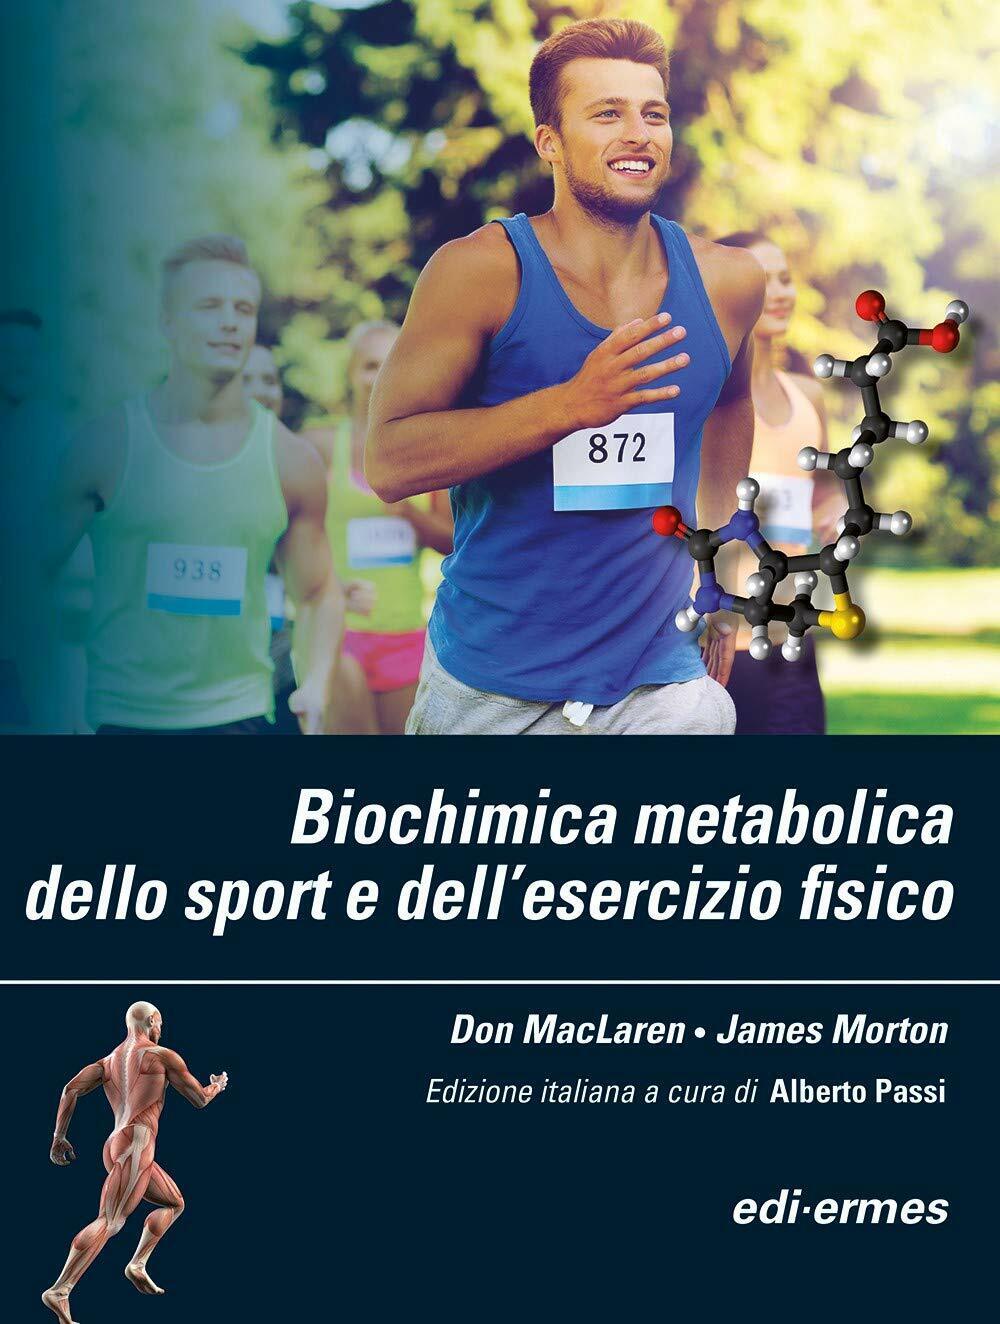 Biochimica metabolica dello sport e delL'esercizio fisico - MacLaren,Morton-2019